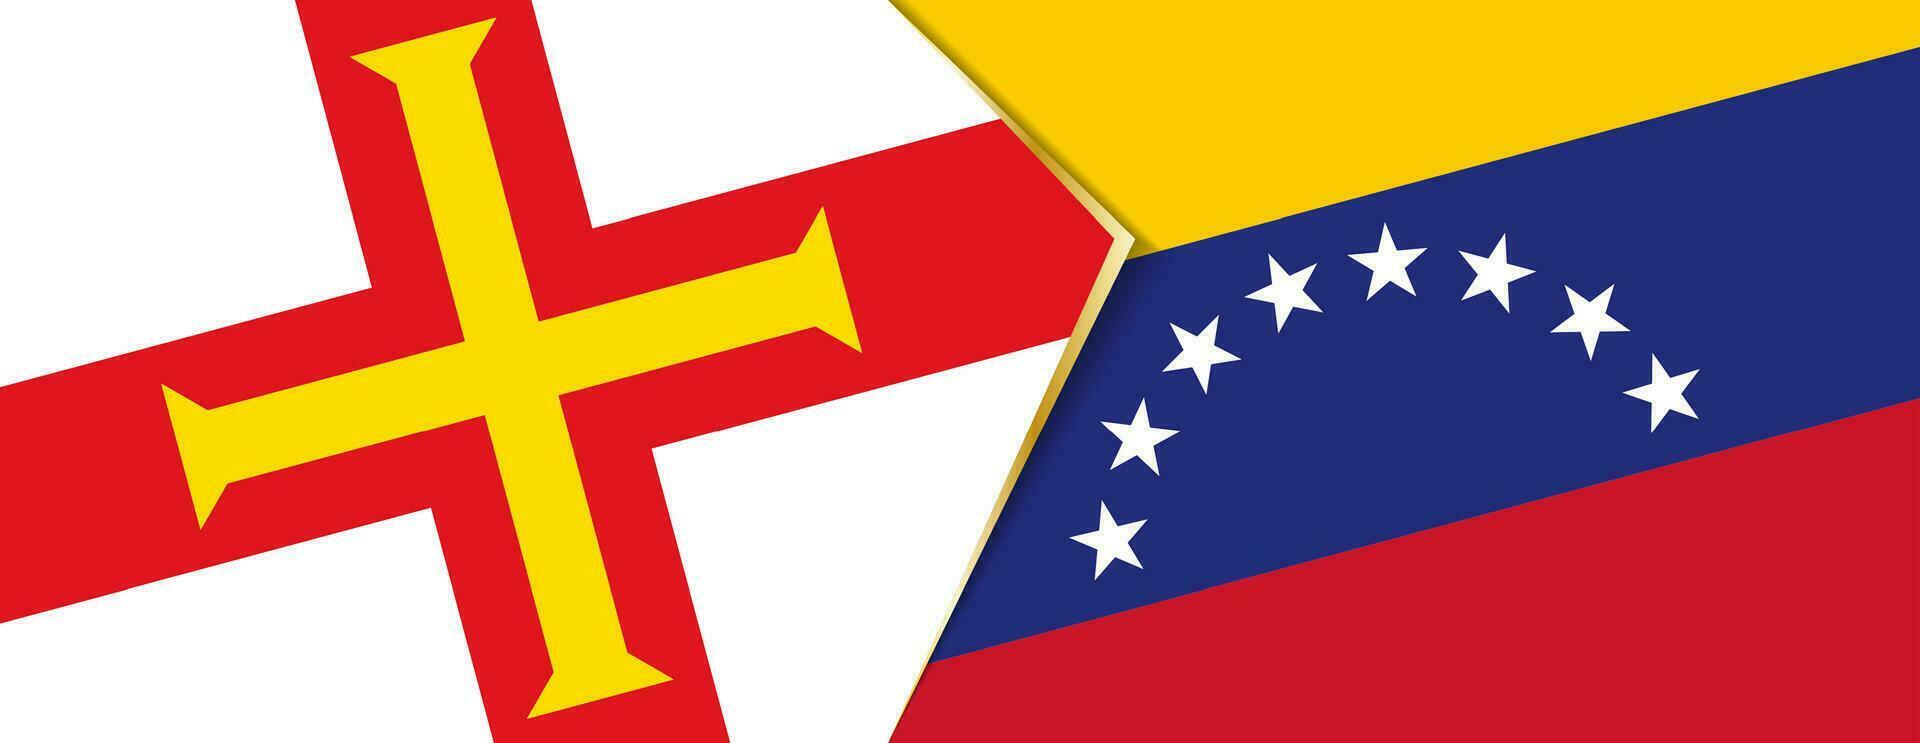 guernsey y Venezuela banderas, dos vector banderas